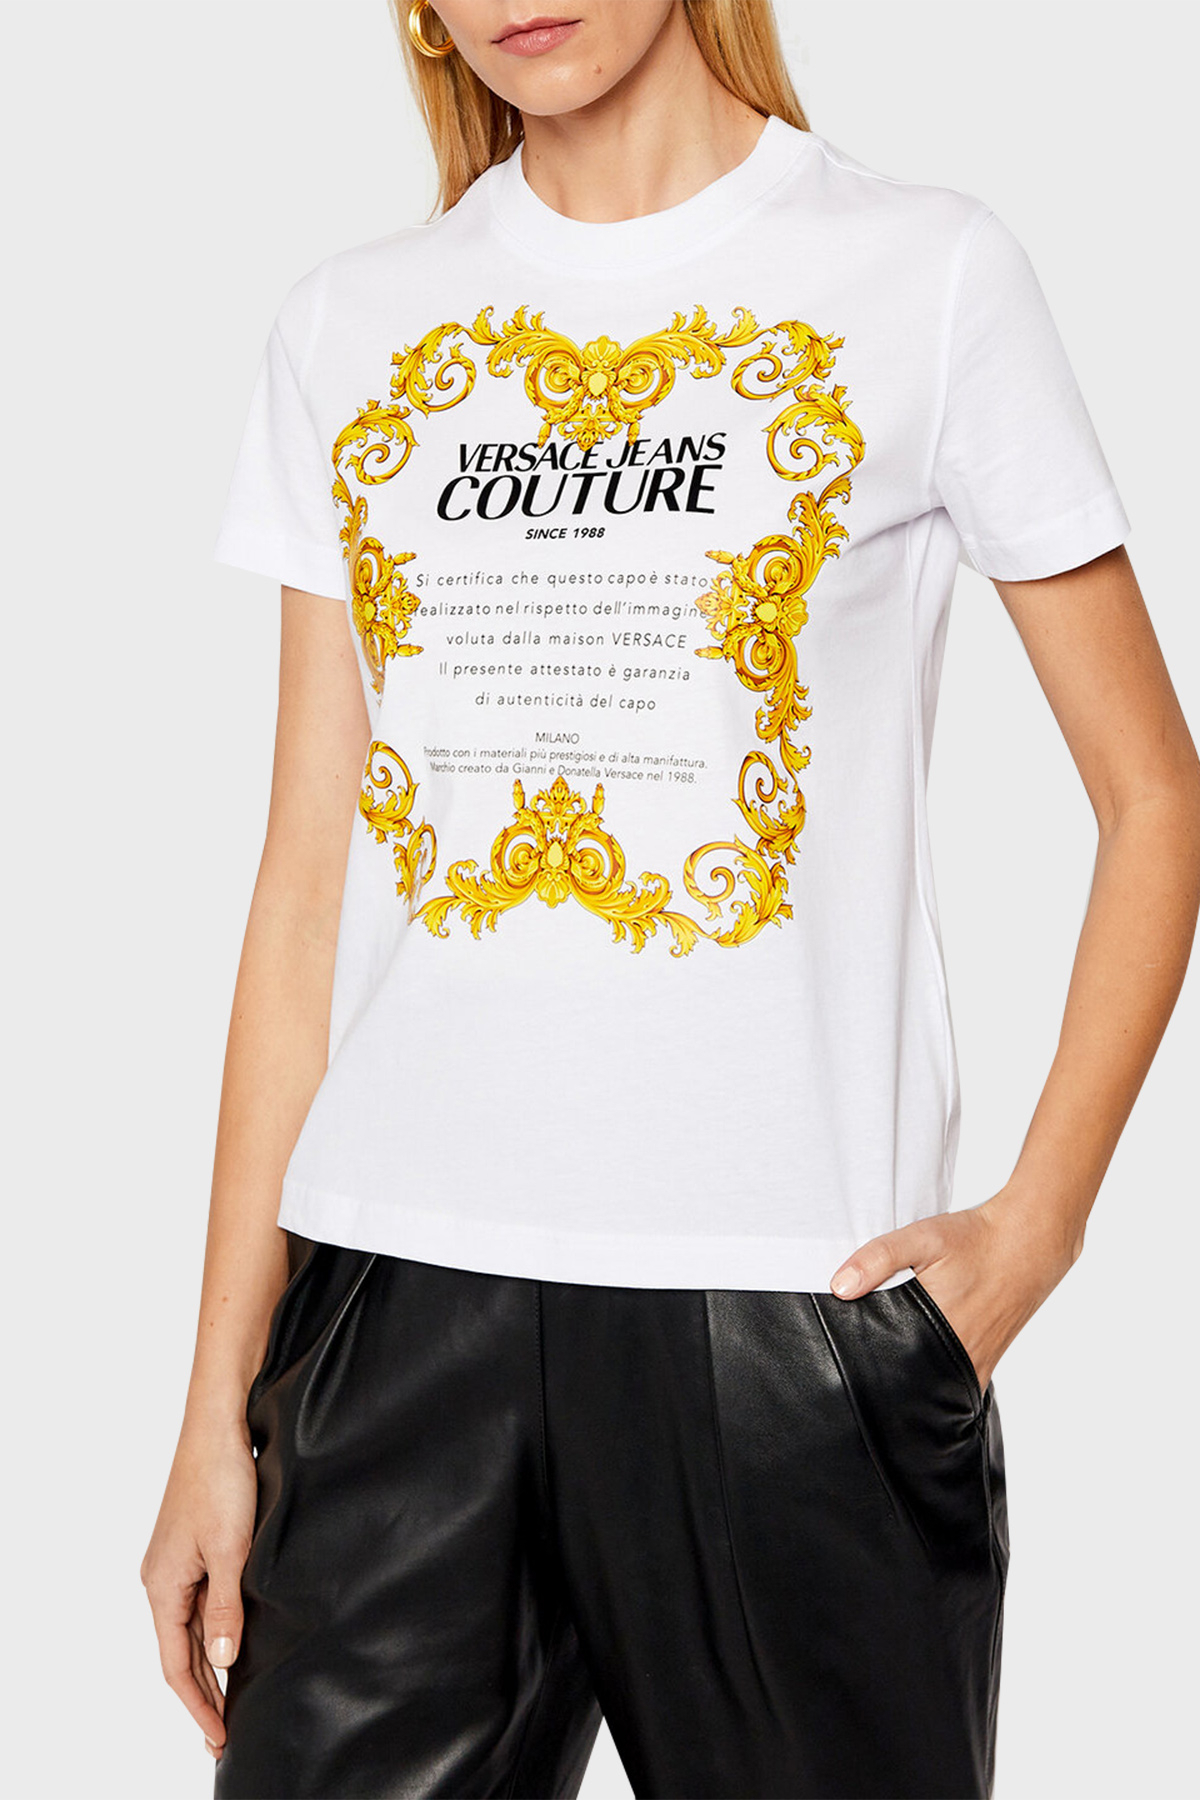 Versace Jeans Couture Baskılı Bisiklet Yaka % 100 Pamuk Bayan T Shirt B2HWA7TJ 30319 003 BEYAZ